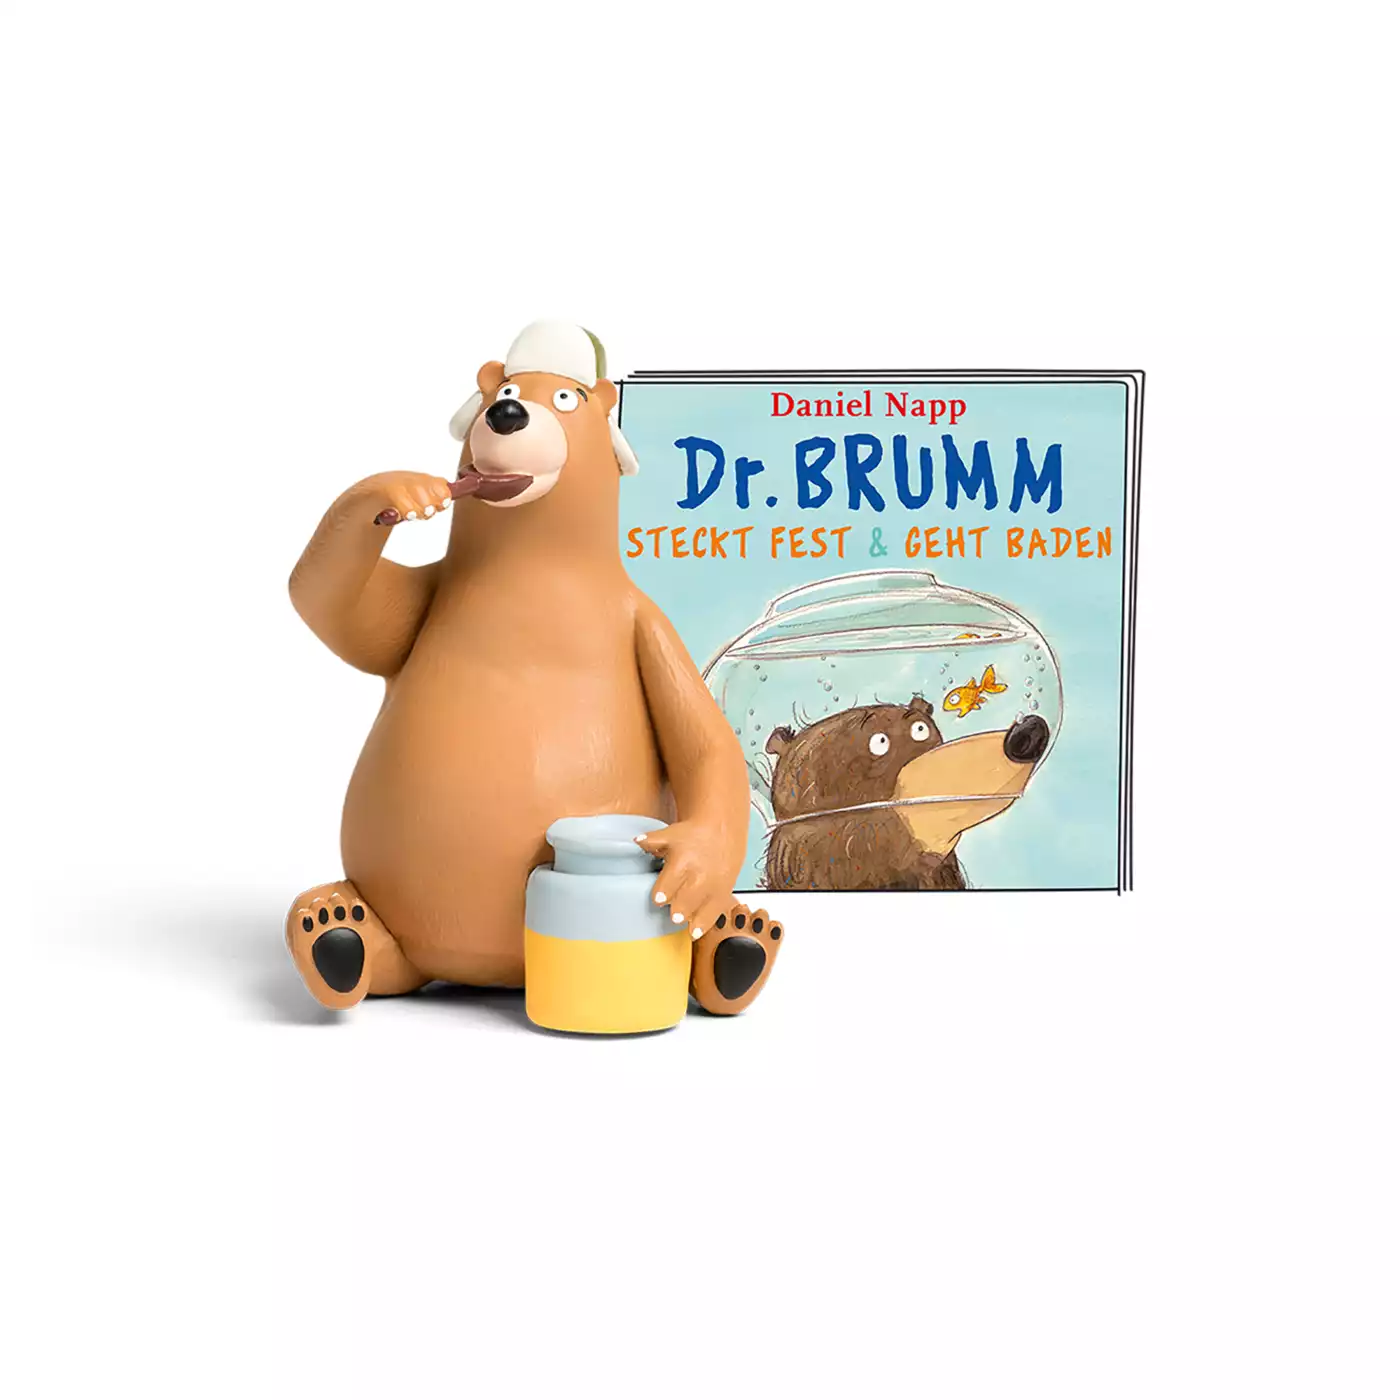 Dr. Brumm steckt fest & geht baden tonies 2000574390611 1